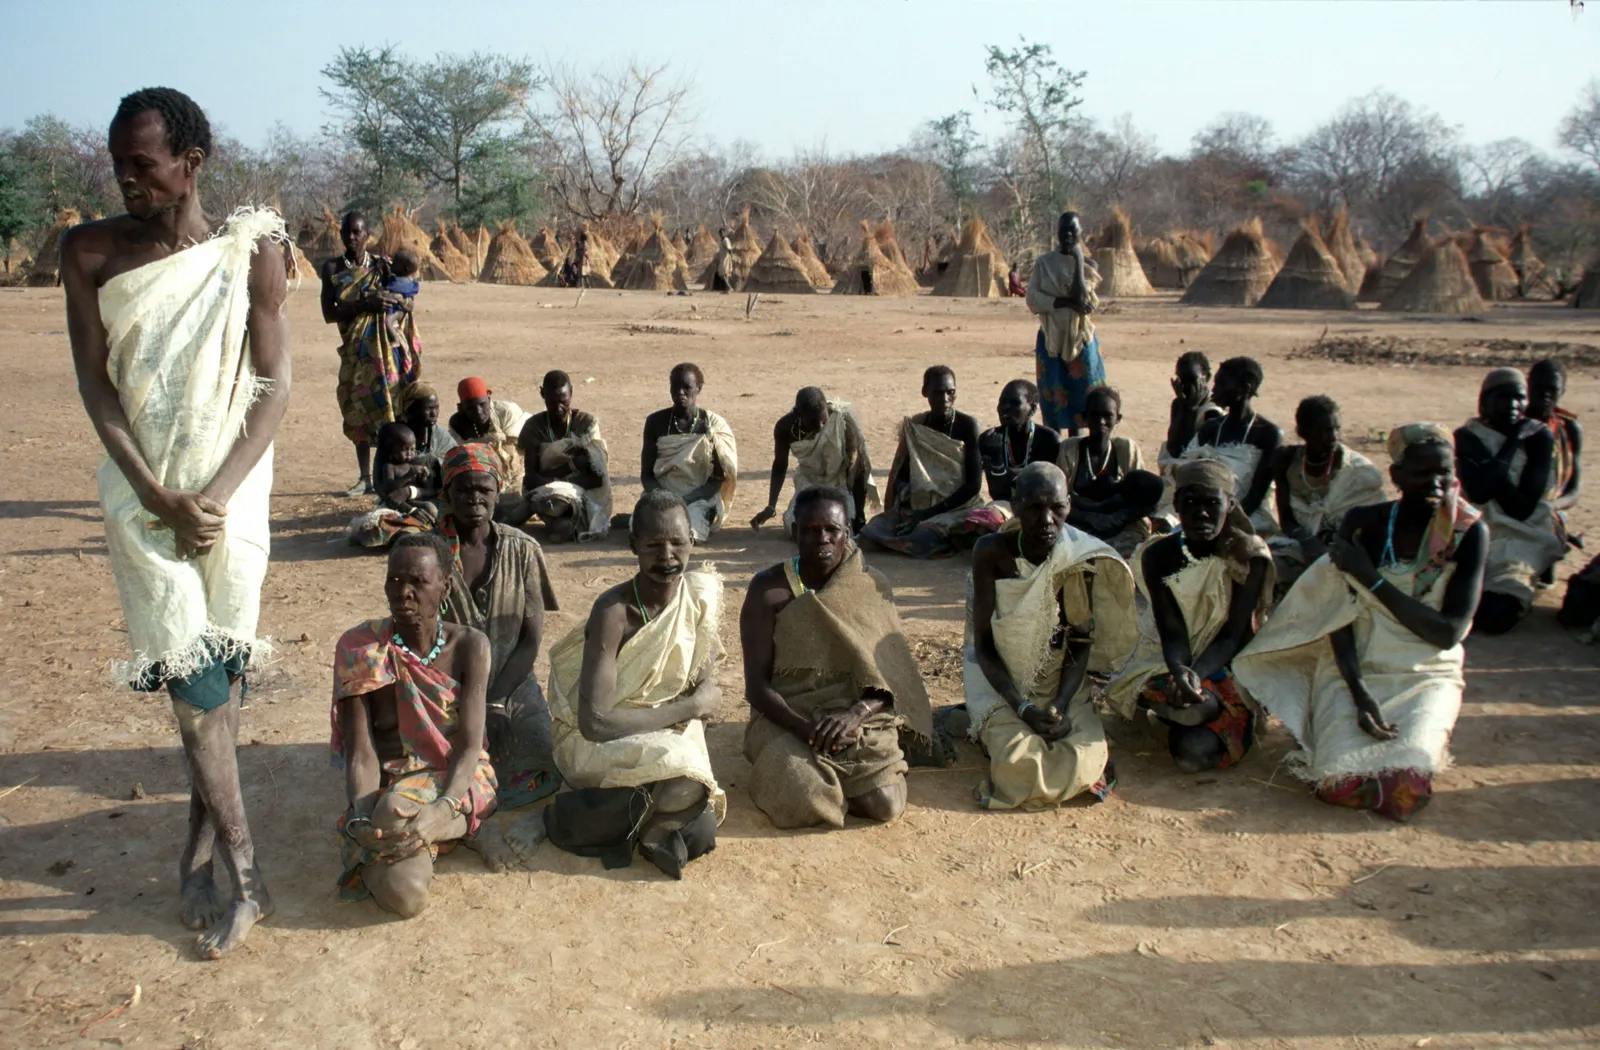 Sklaverei und der Westen: Basiert der Wohlstand des Westens auf Afrika?